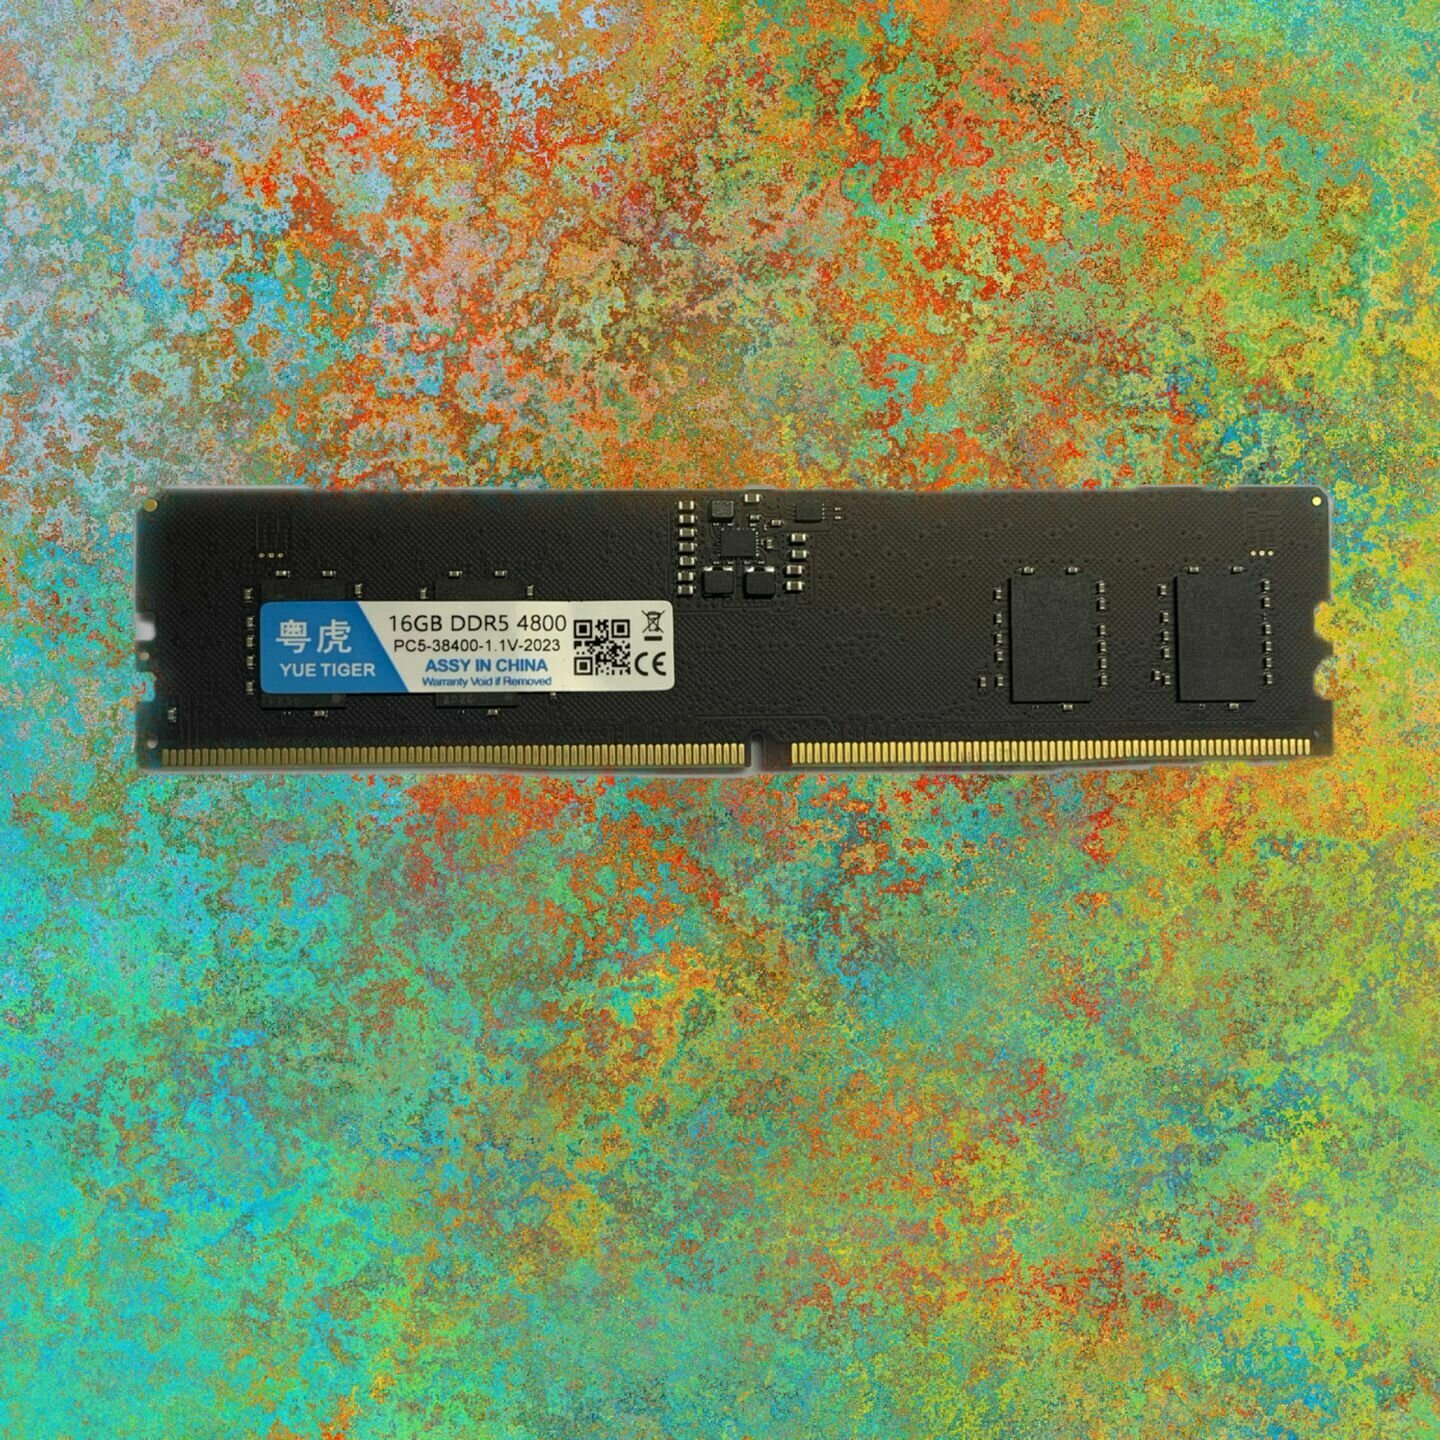 Модуль памяти DDR5 16GB DDR5-4800 480016G-S, CL40, 1.1V